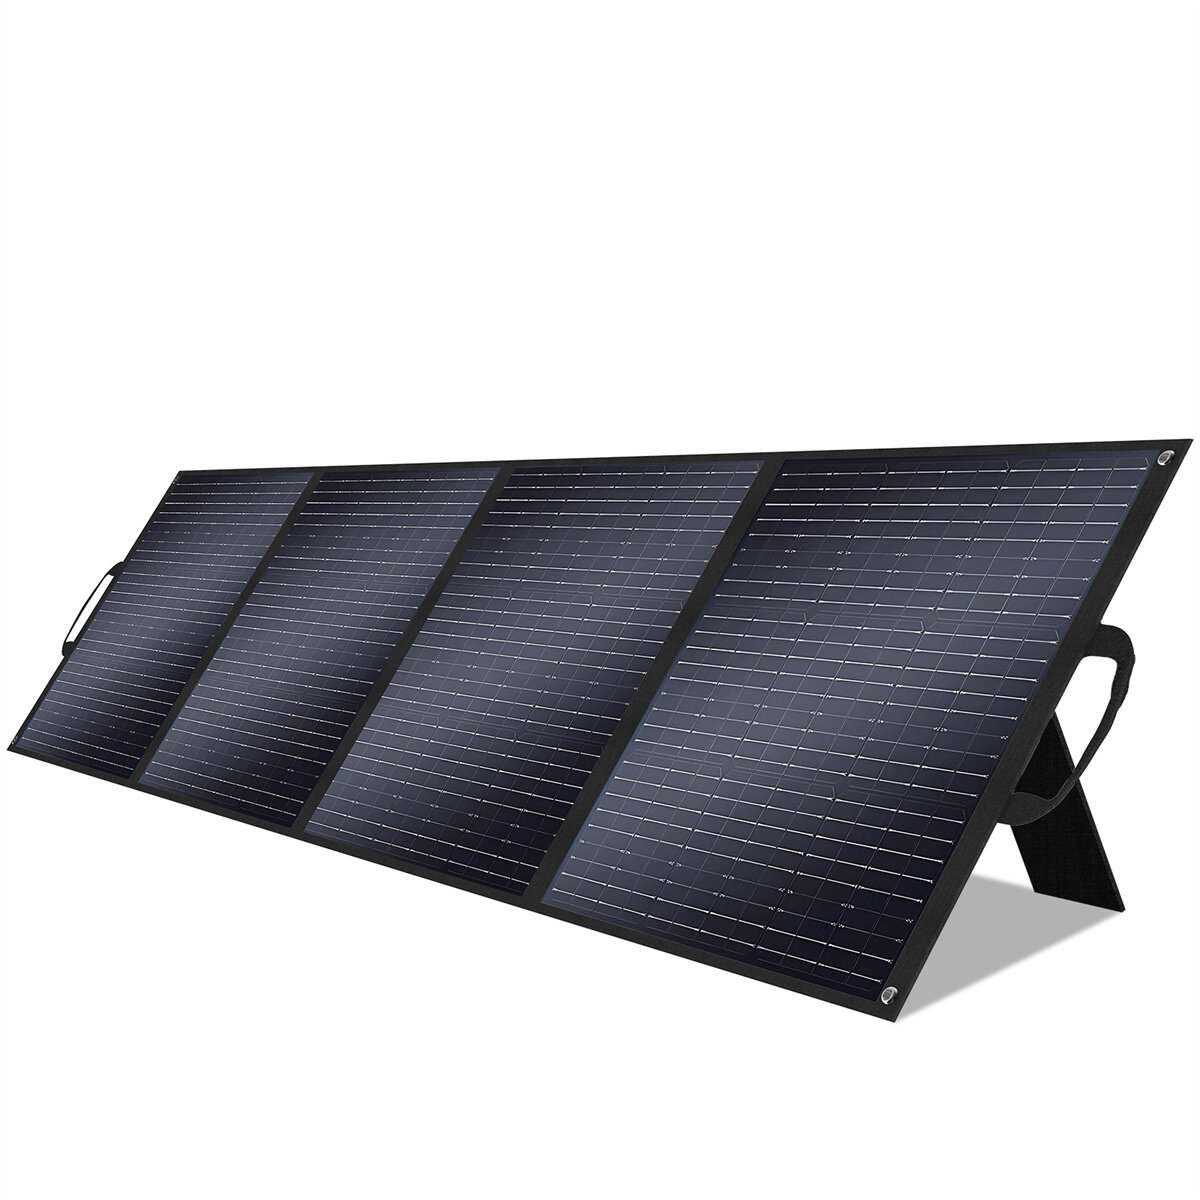 [EU Direct] 1Pc VLAIAN S200 Pannello Solare ETFE da 200W 23.4% Efficienza Pannello Solare Portatile Pieghevole per Patio, Campeggio all'aperto, Blackout, Emergenza